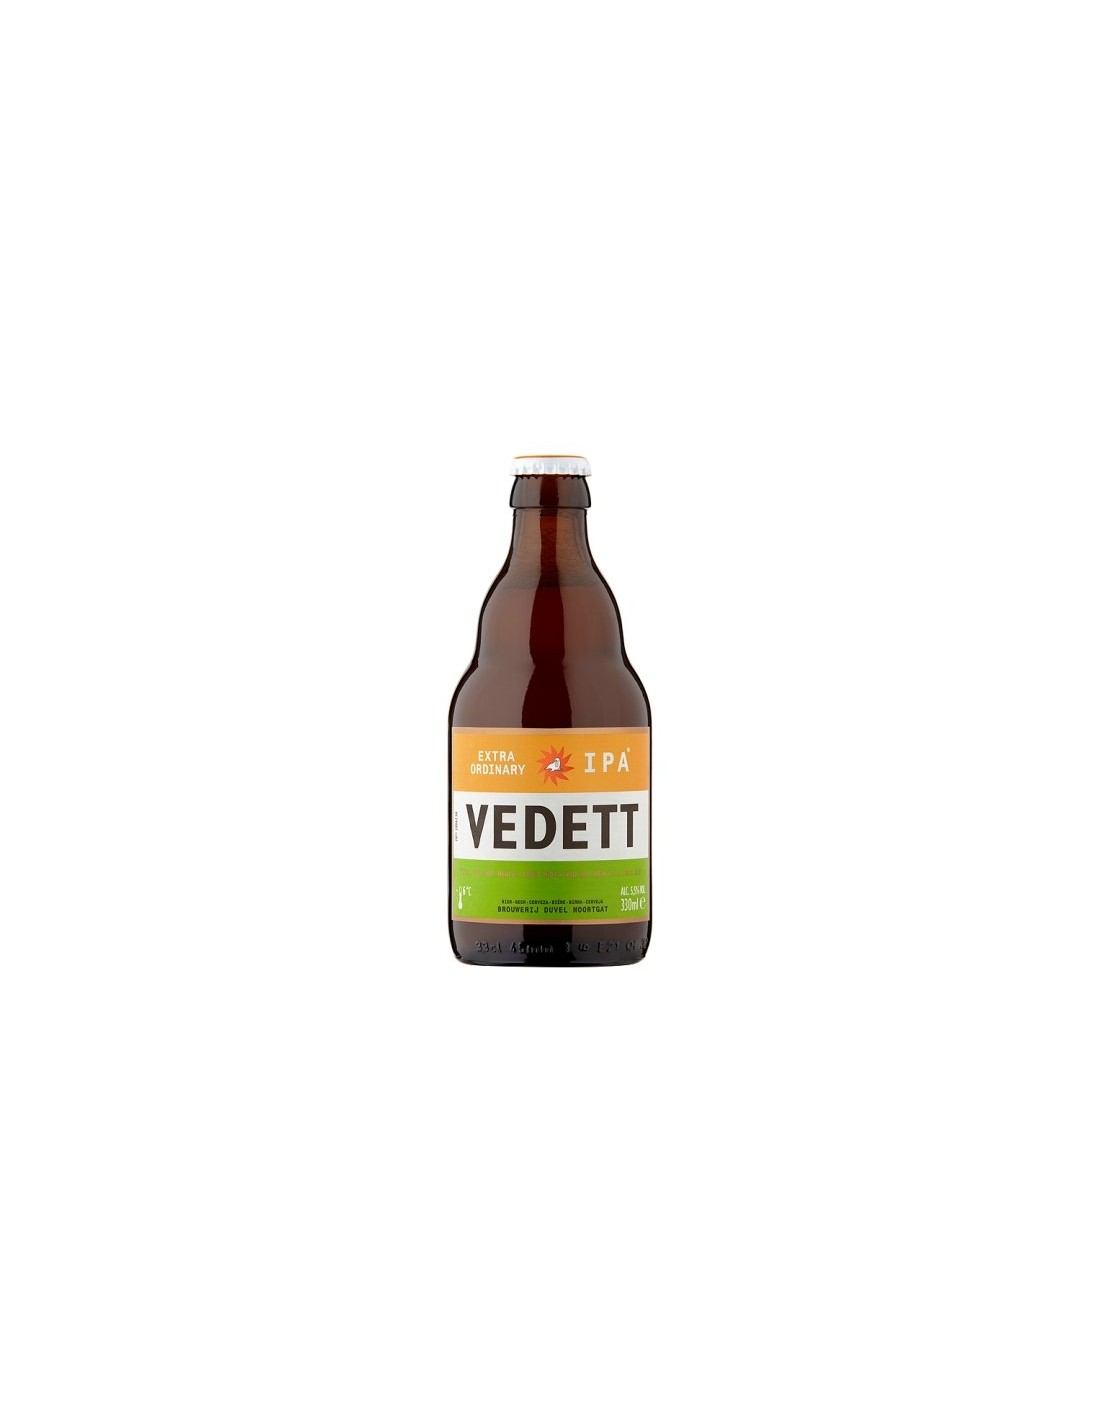 Bere amber, nefiltrata Vedett, 5.5% alc., 0.33L, Belgia